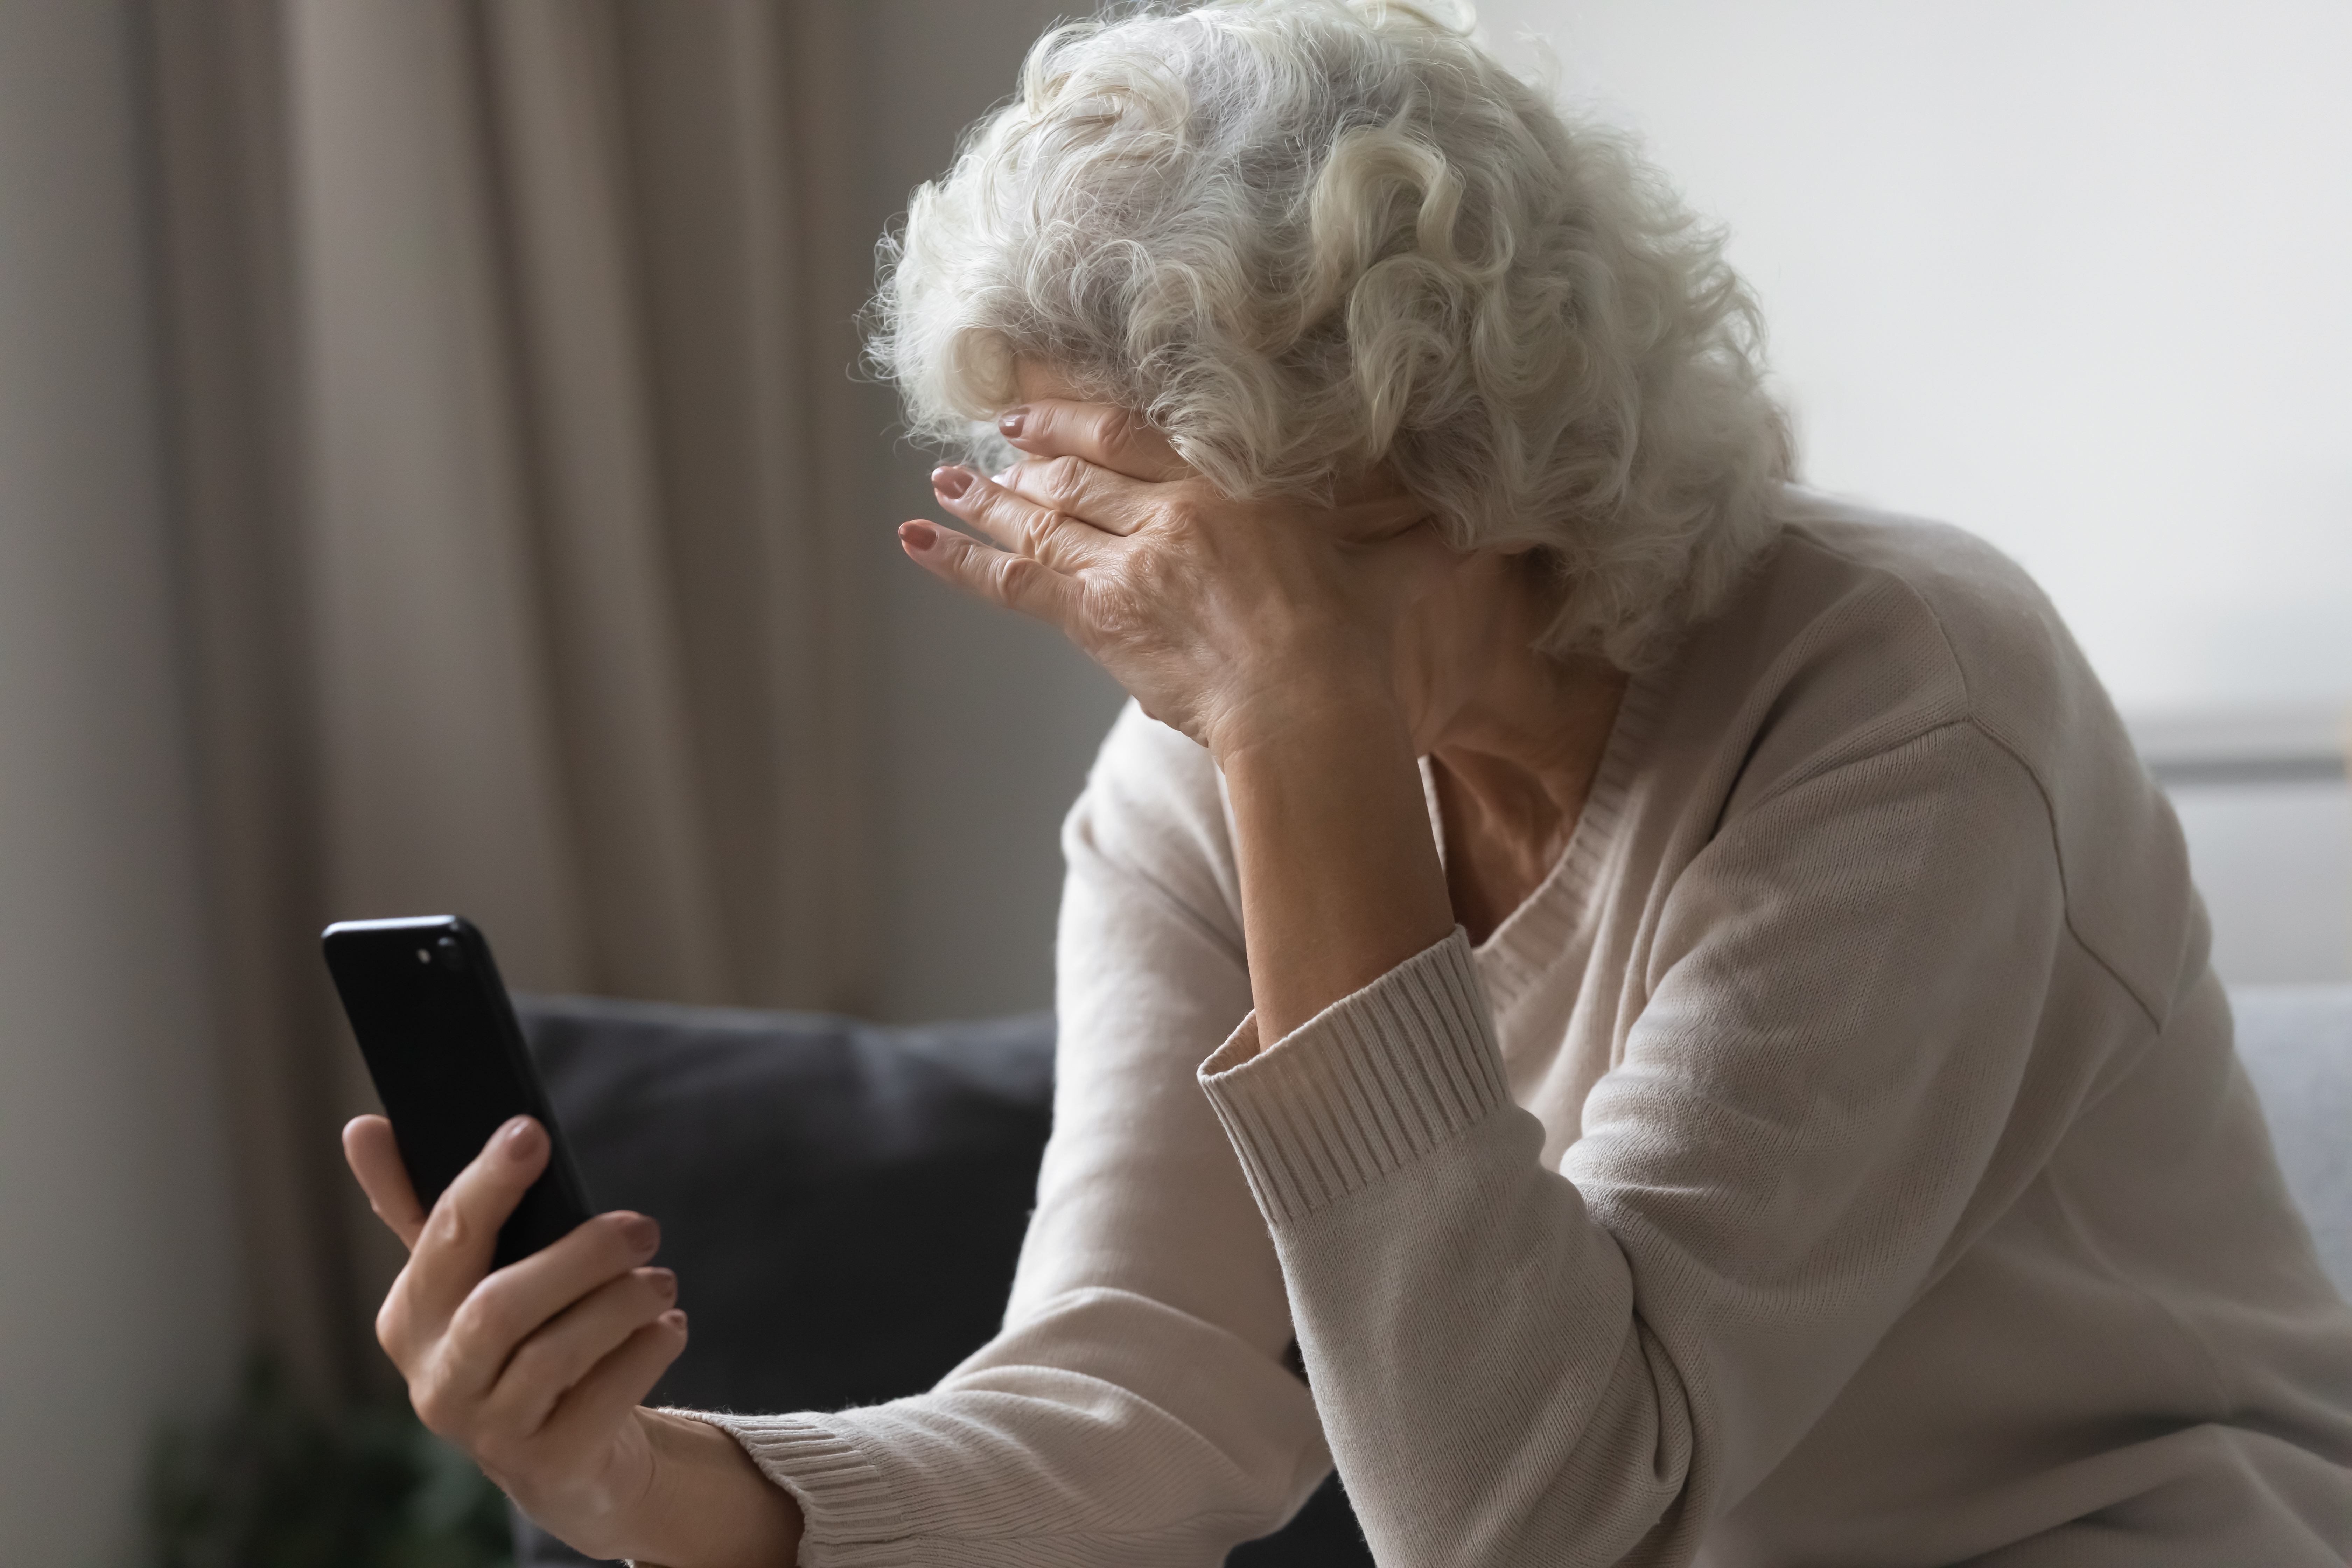 Une femme âgée a l'air préoccupée alors qu'elle tient un téléphone portable. Source : Shutterstock